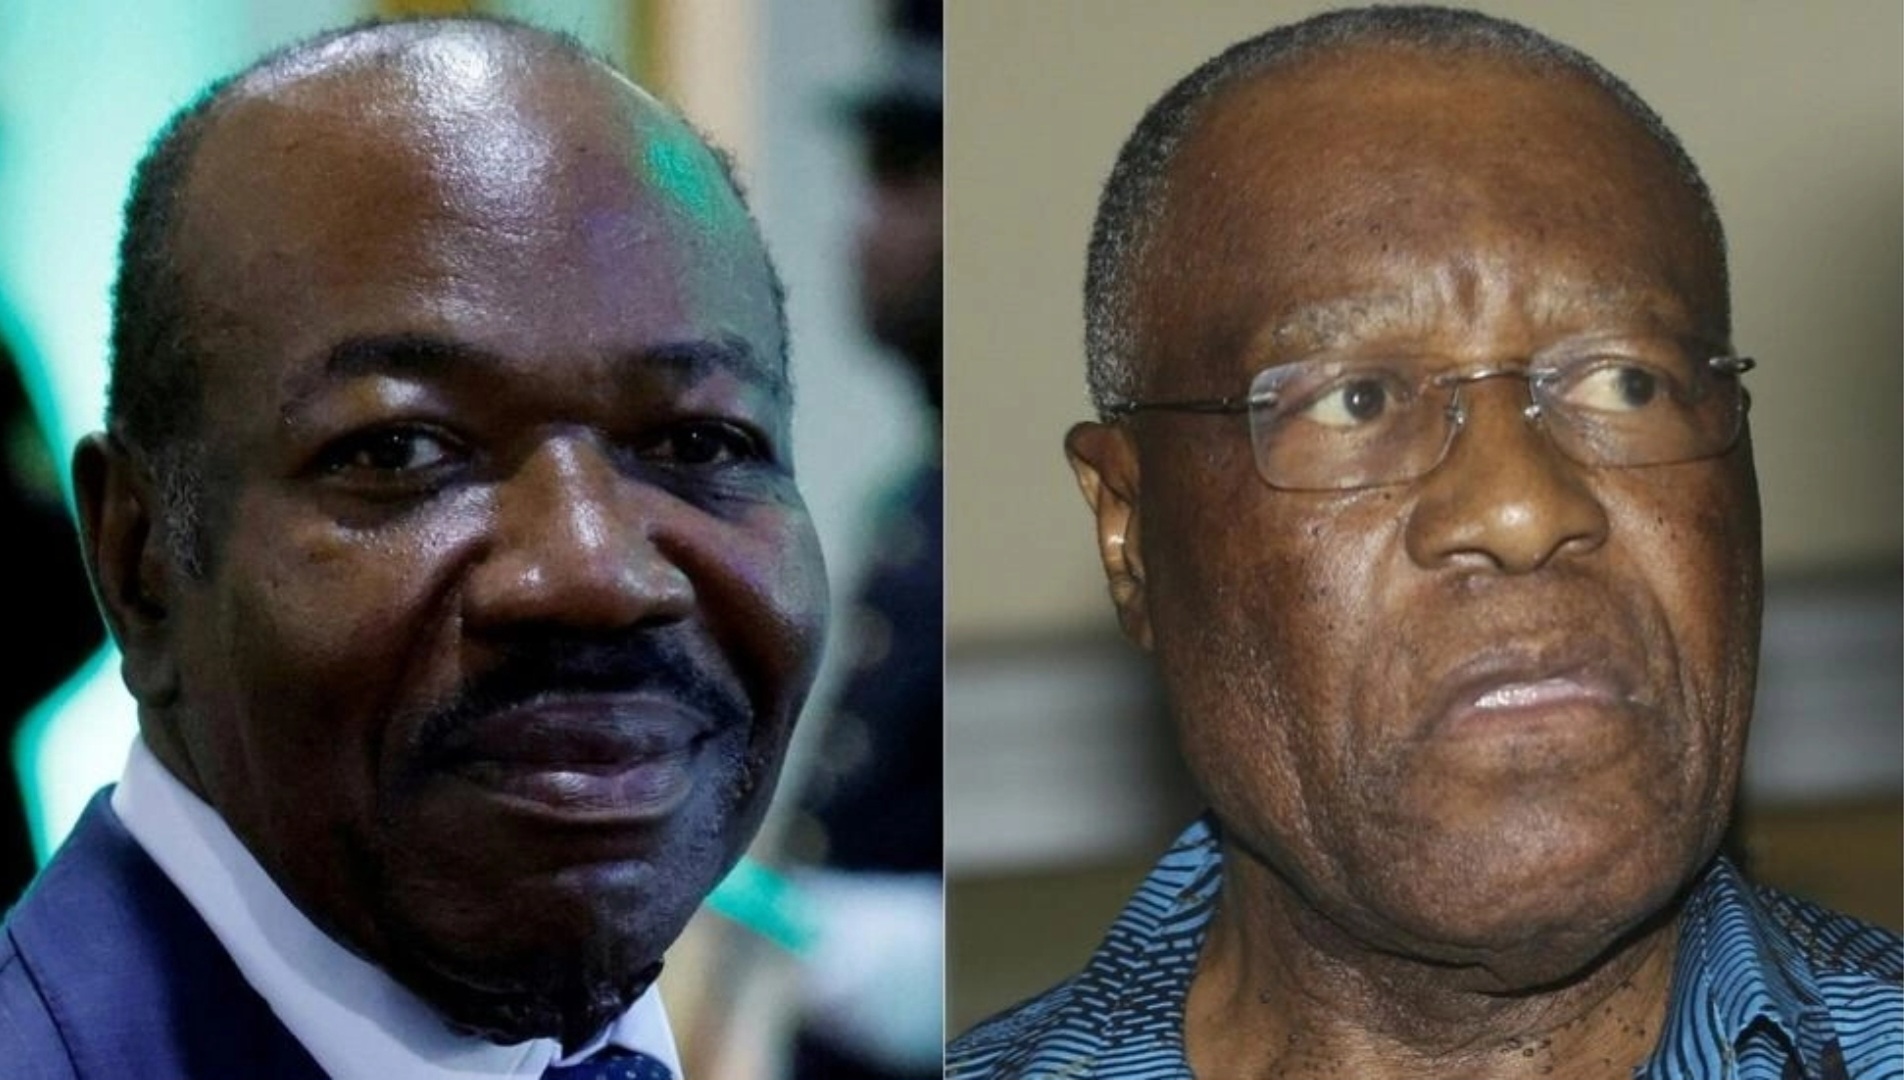 Albert Ondo Ossa, principal candidat de l’opposition au Gabon: « Il n’y a pas de coup d’Etat militaire, mais une continuité des Bongo… »